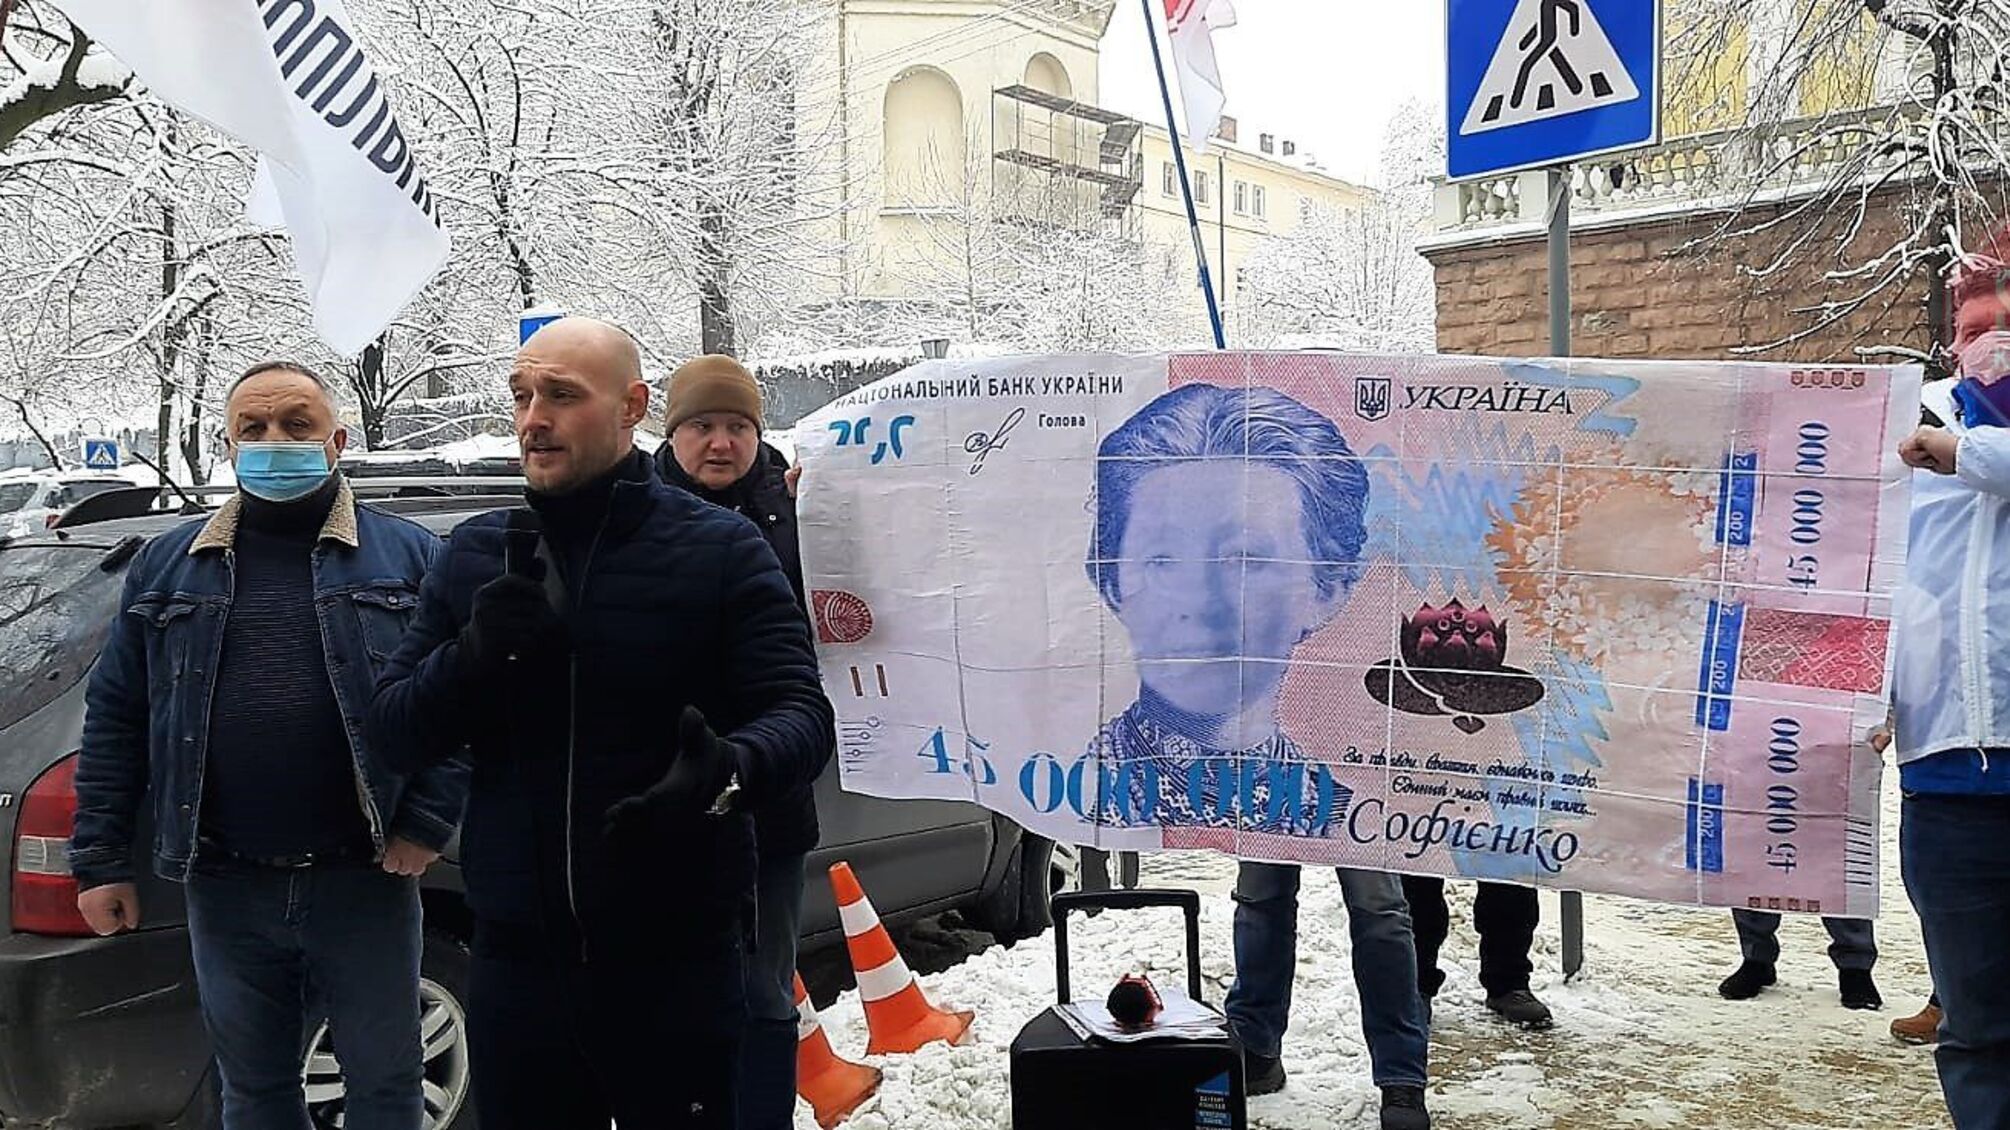 Госисполнители «пропустили» миллионный транш Софиенко: Минюст расследует обстоятельства